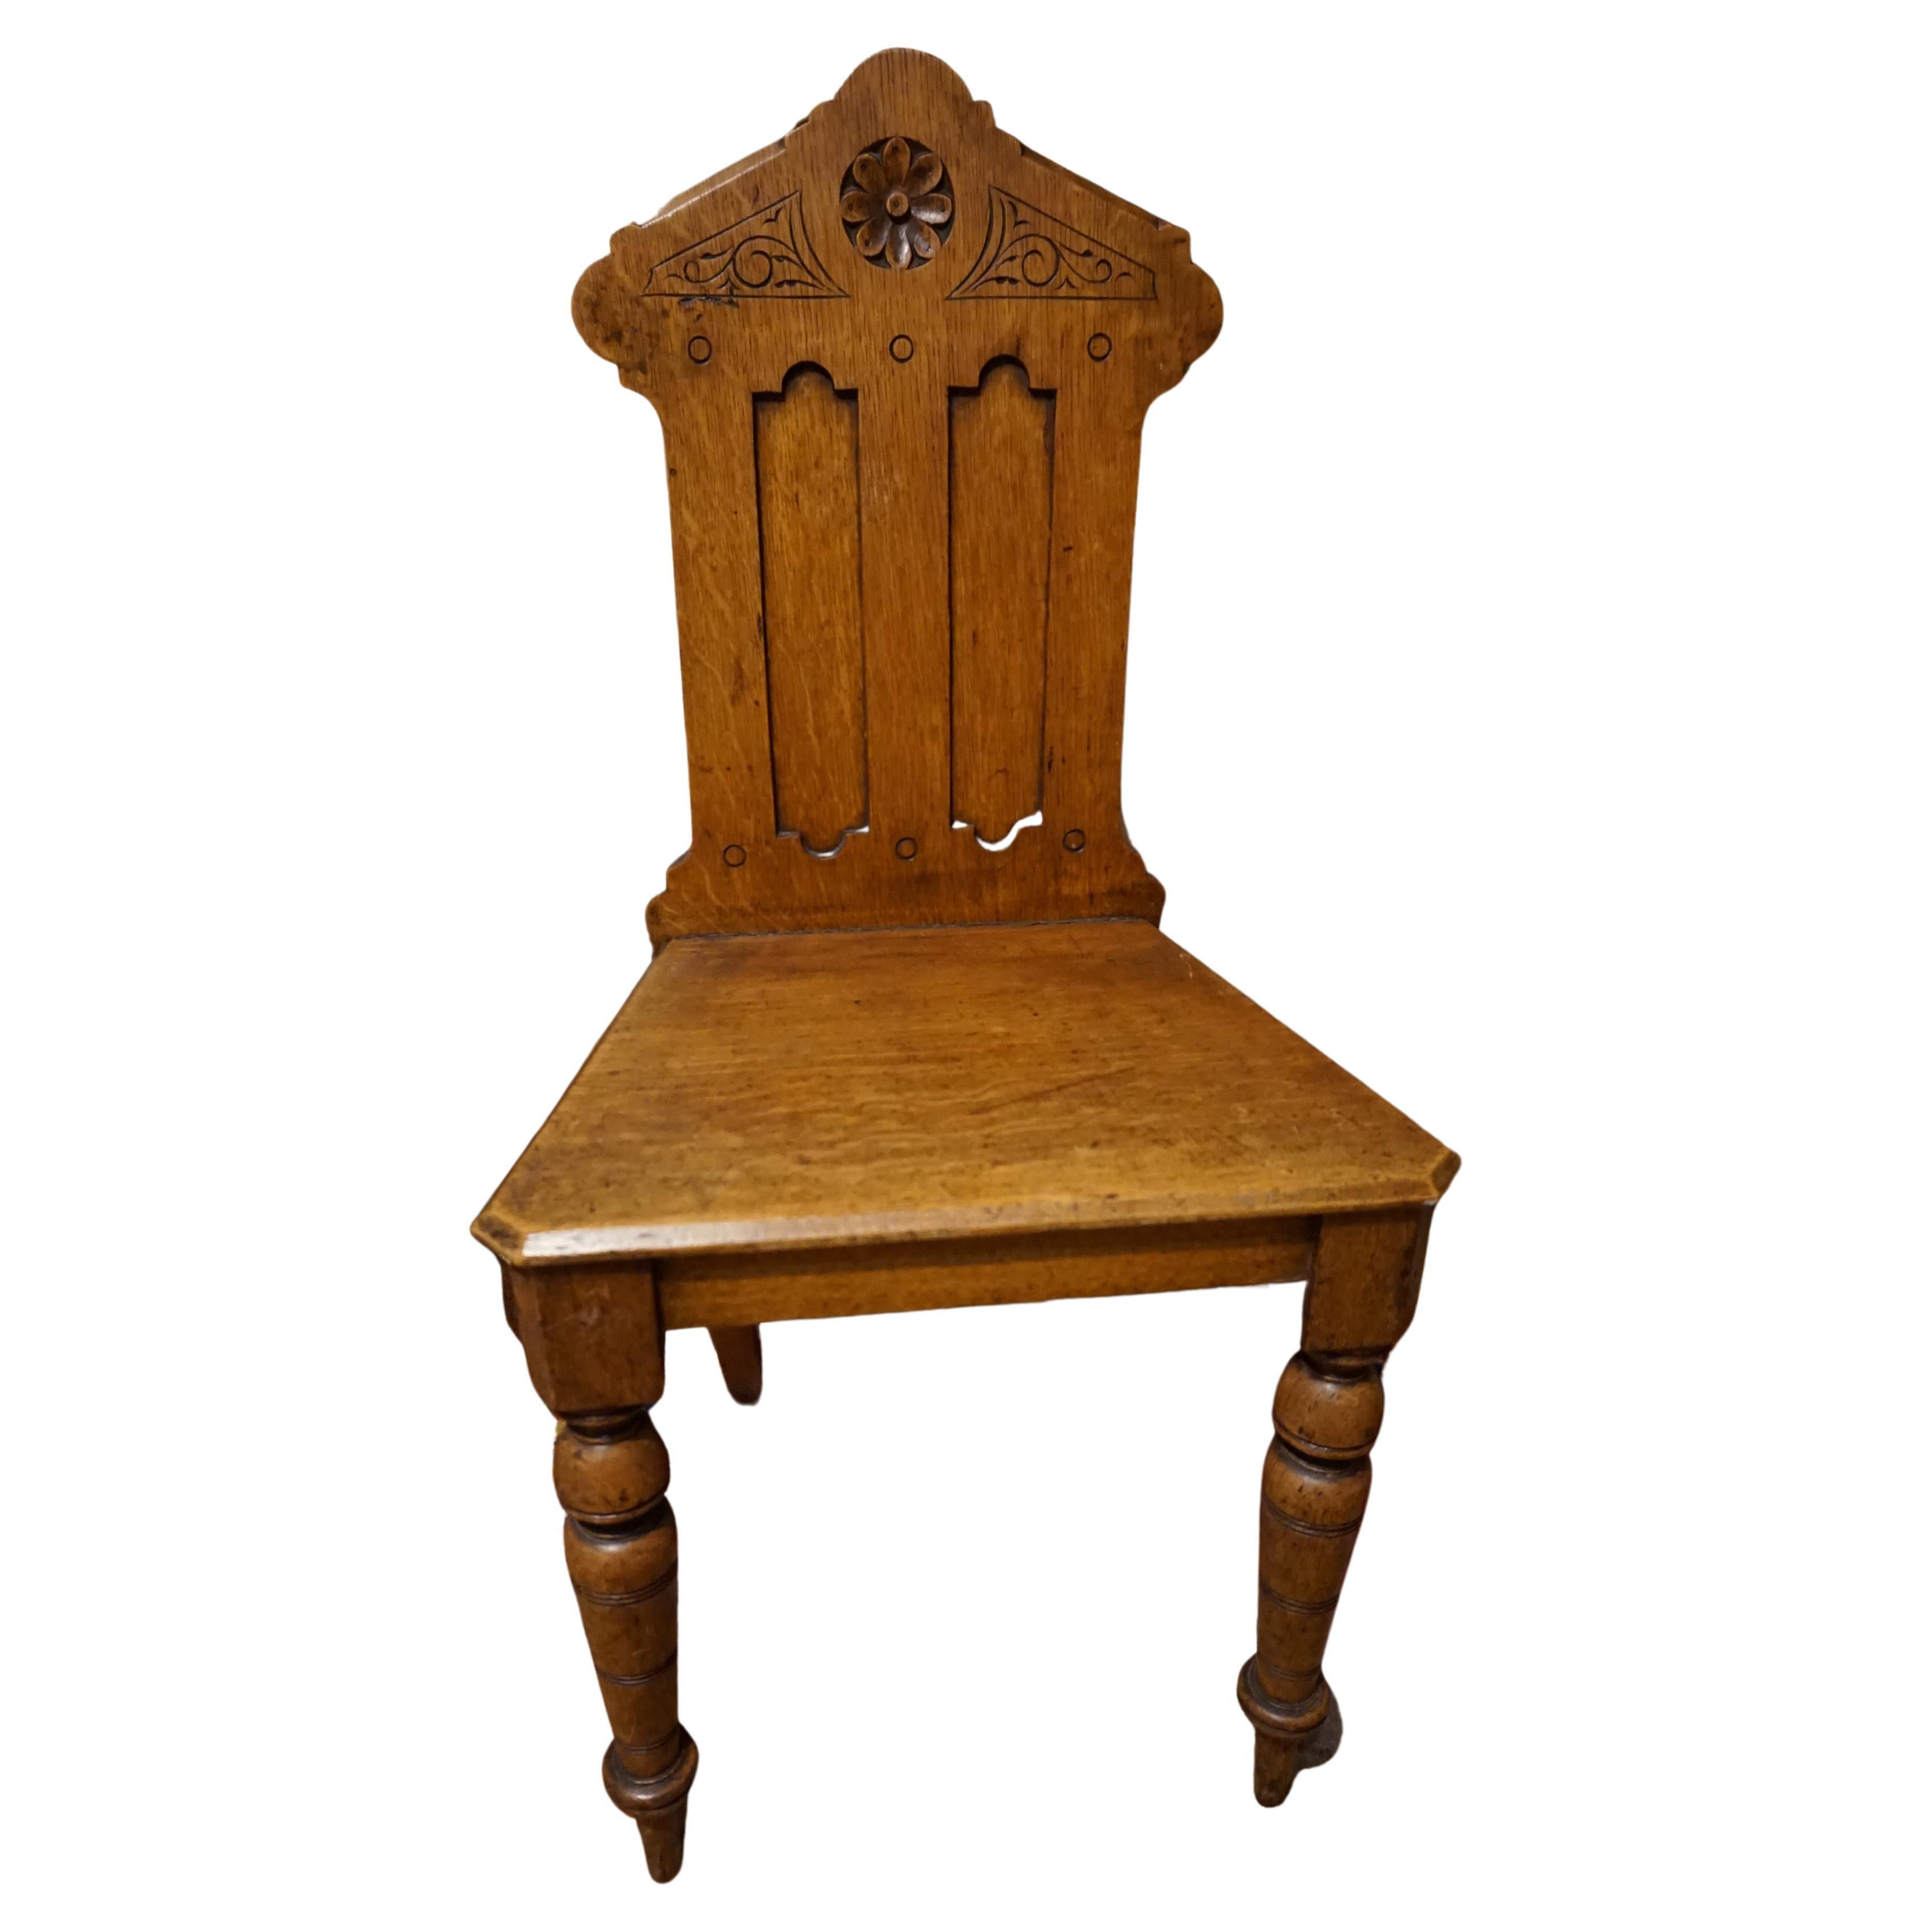 Chaise d'appoint en chêne massif de style néo-gothique anglais, sculptée à la main.